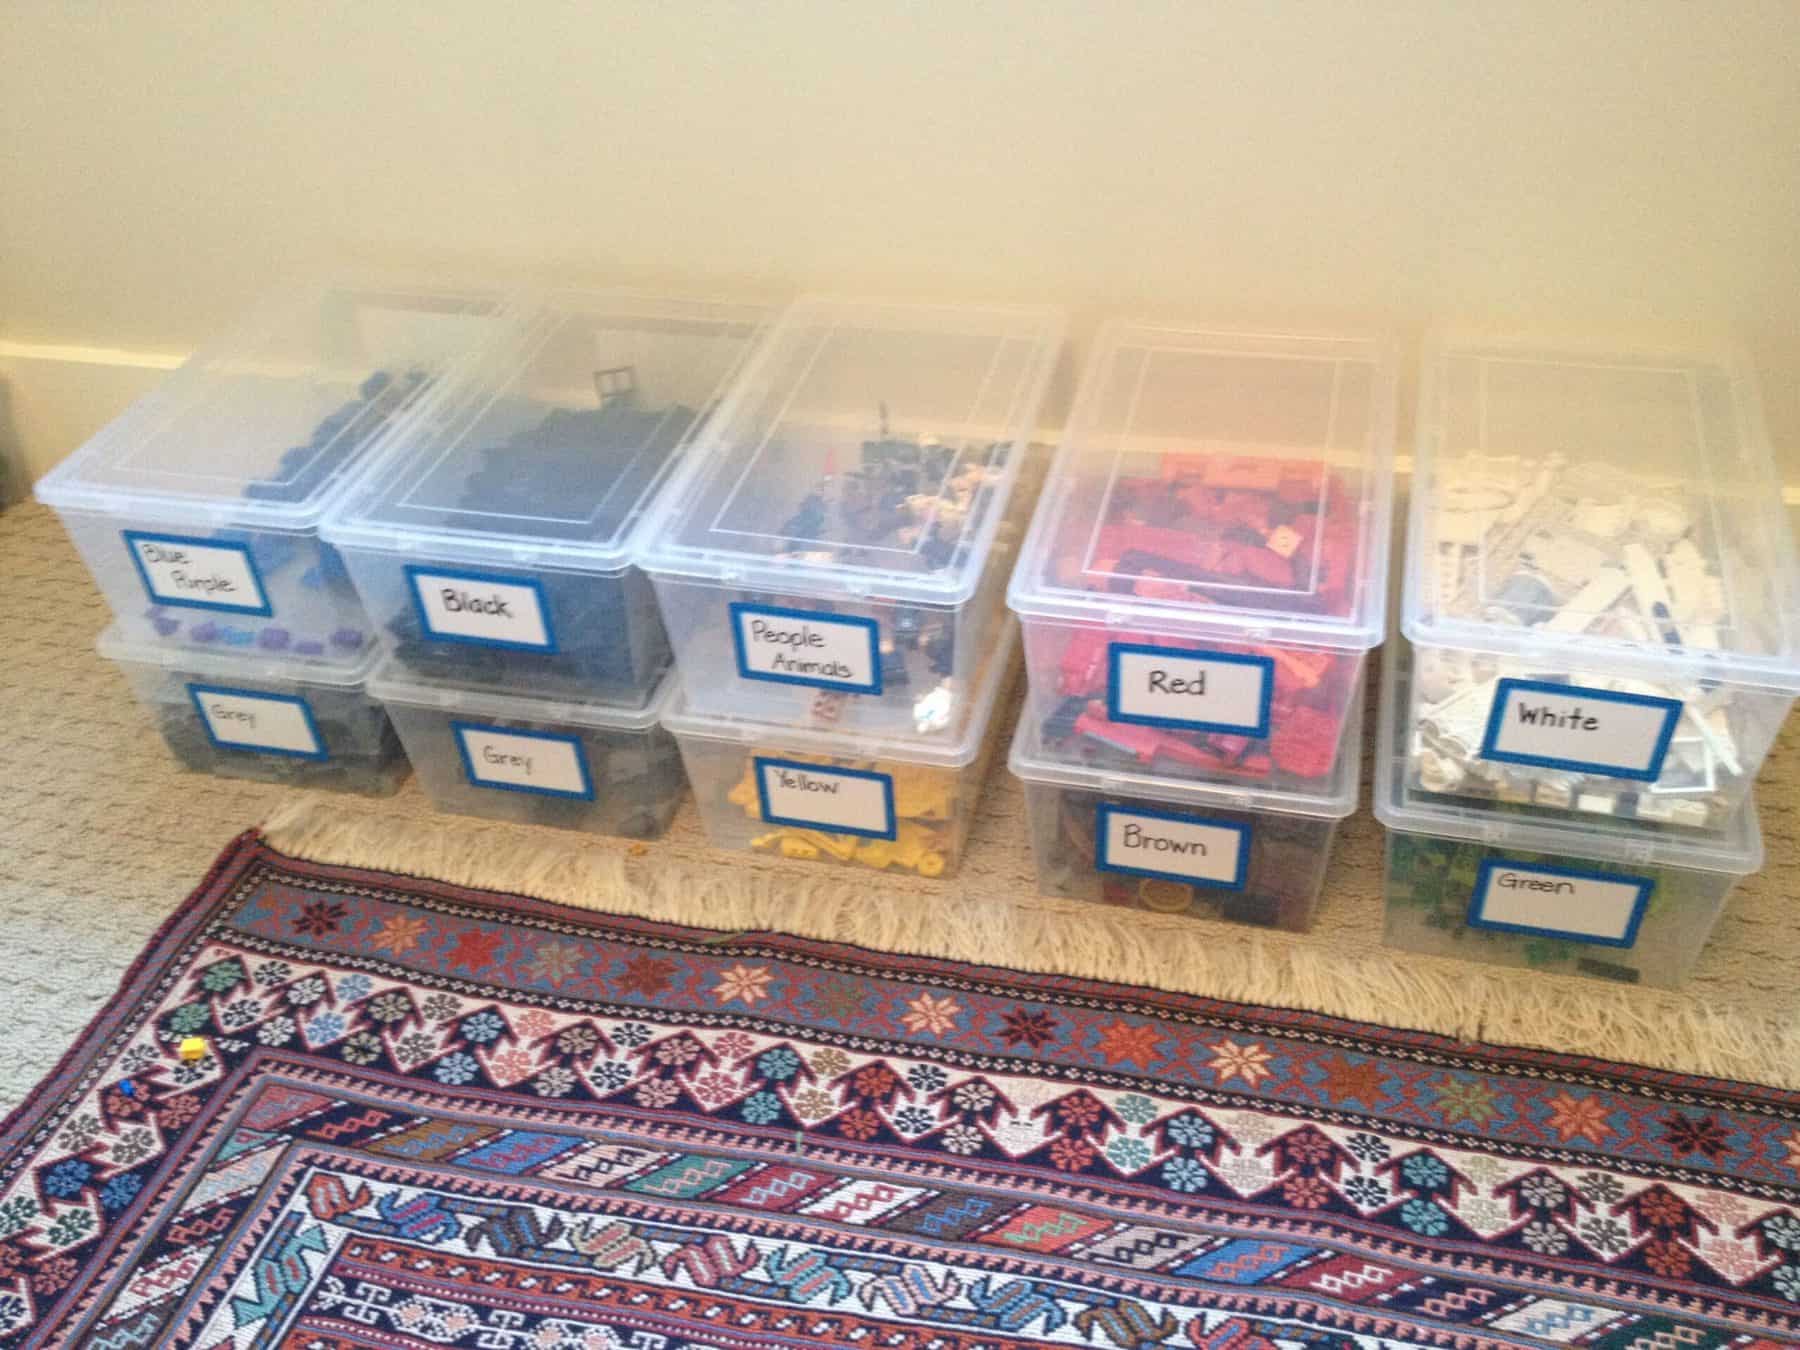 Lego Organization  Lego storage organization, Lego organization